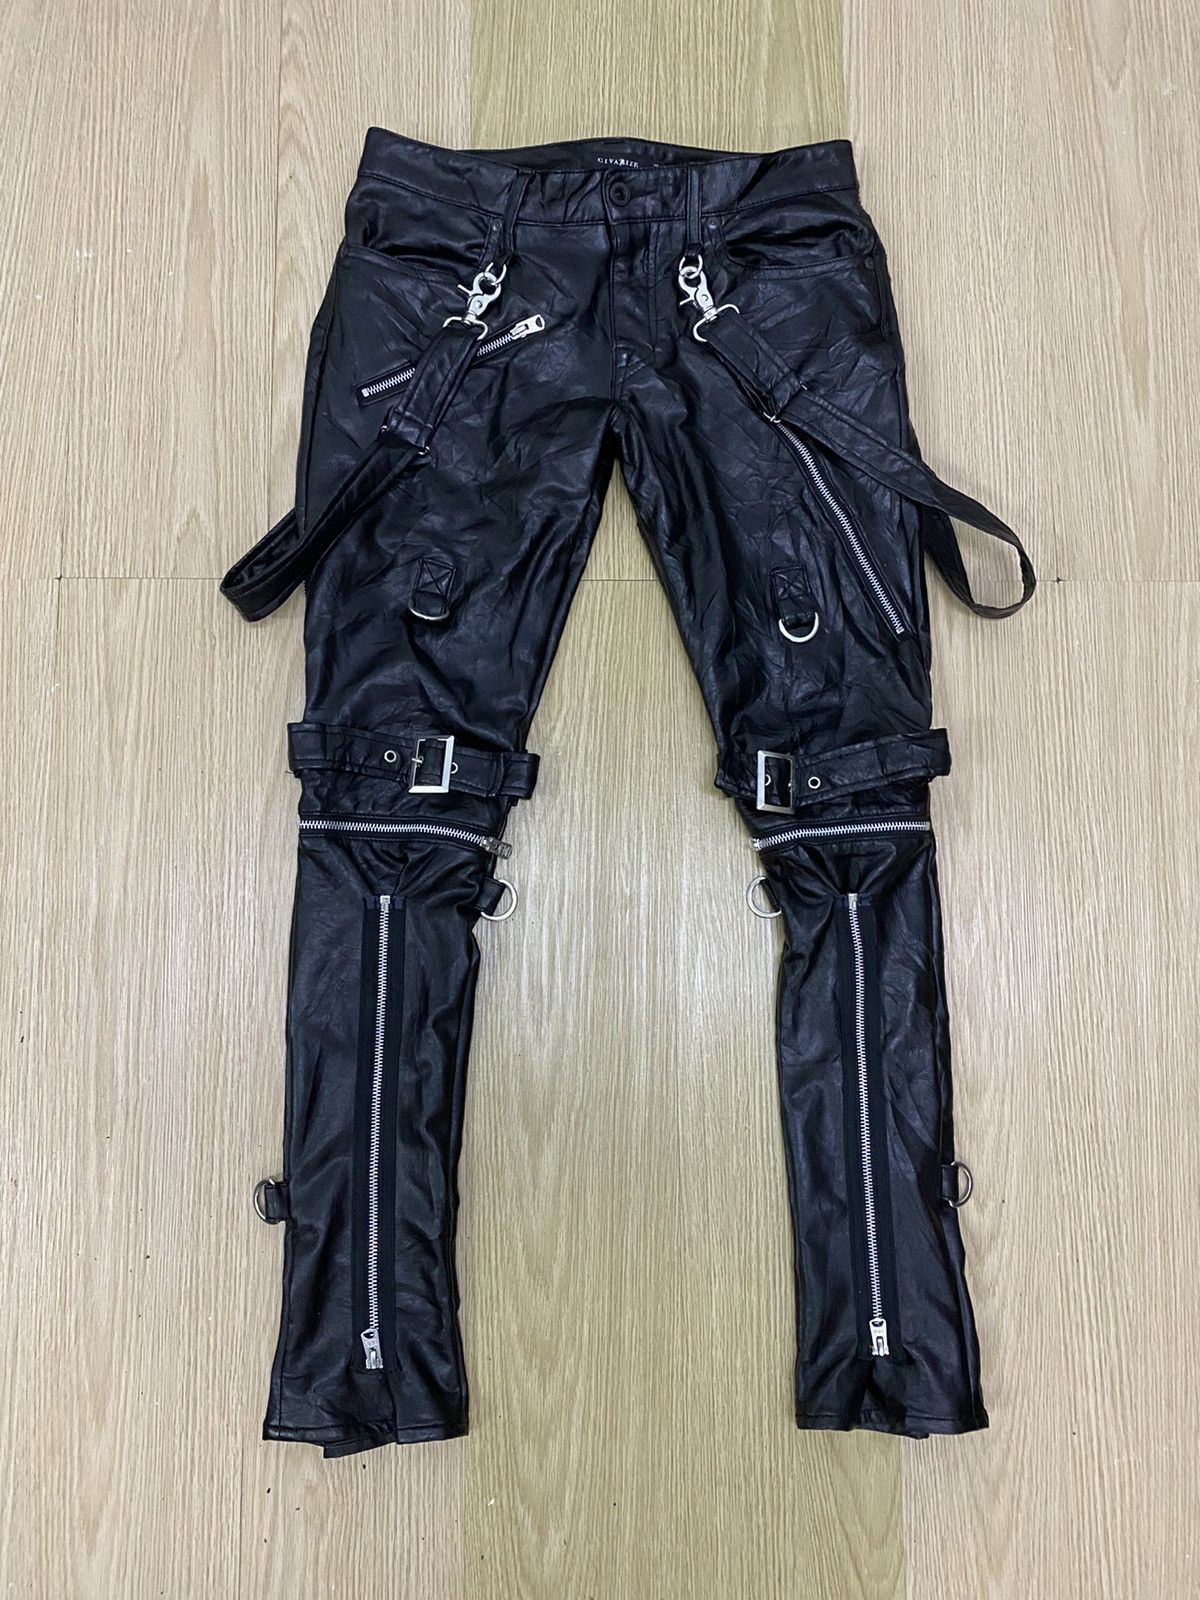 leather pants bondage